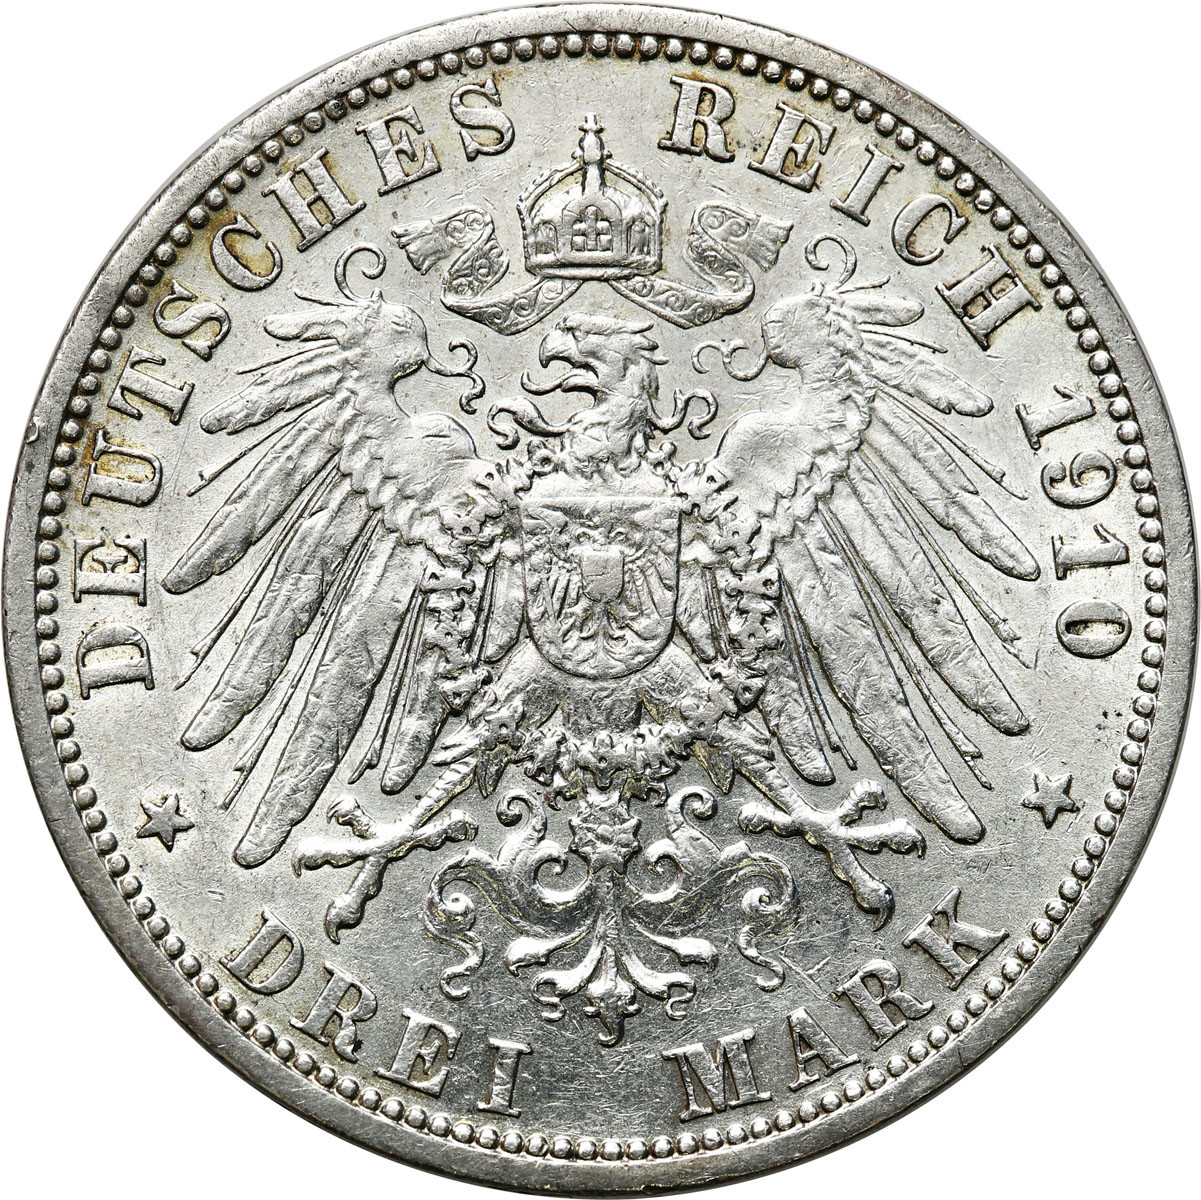 Niemcy, Prusy. Wilhelm II. 3 marki 1910 A, Berlin